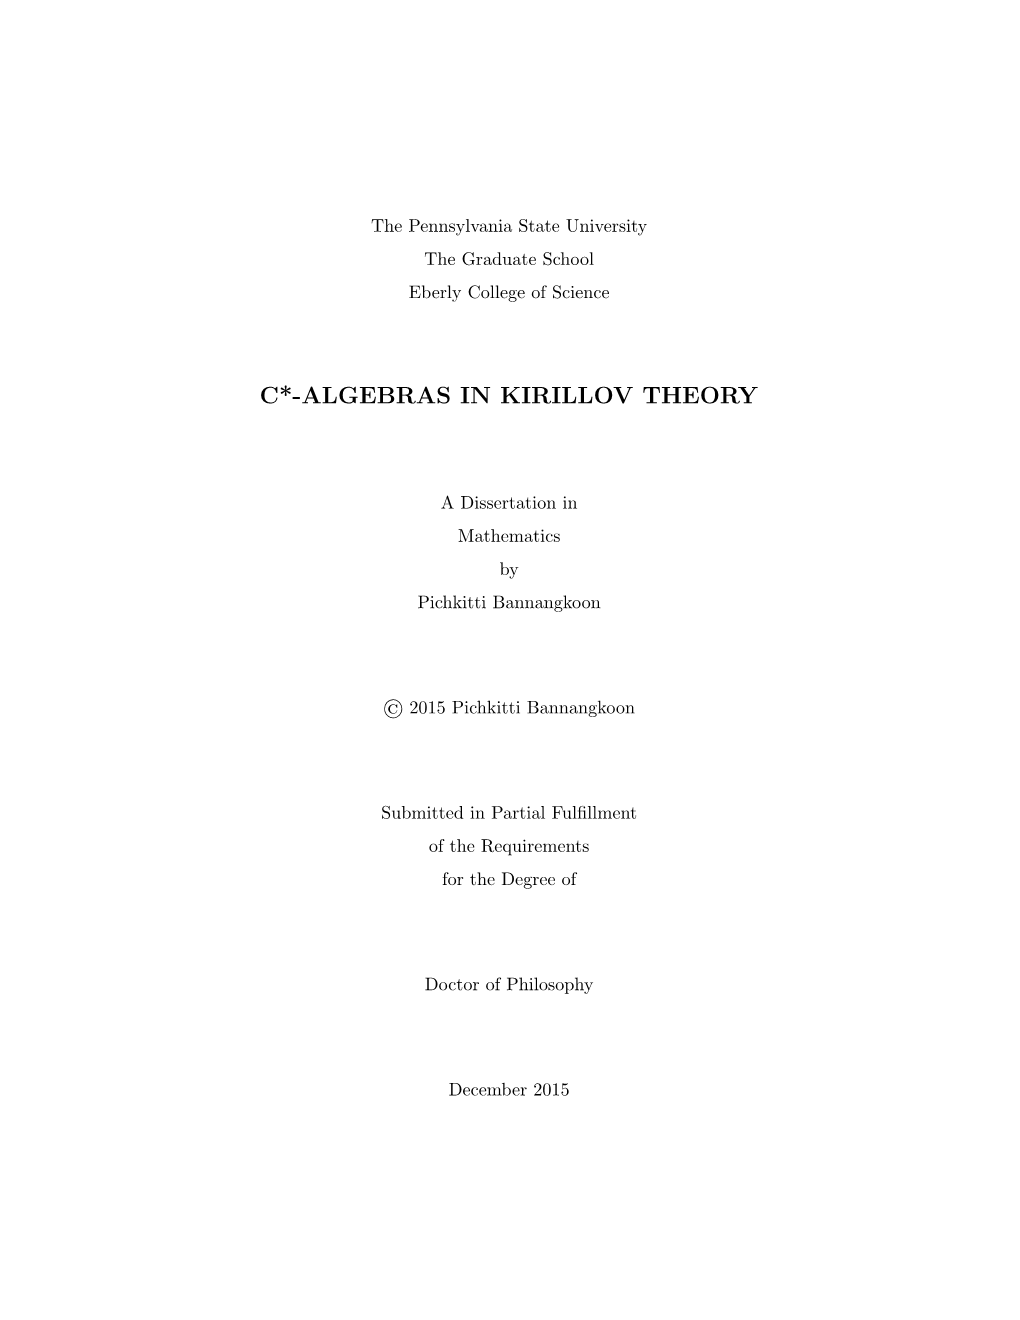 C*-Algebras in Kirillov Theory